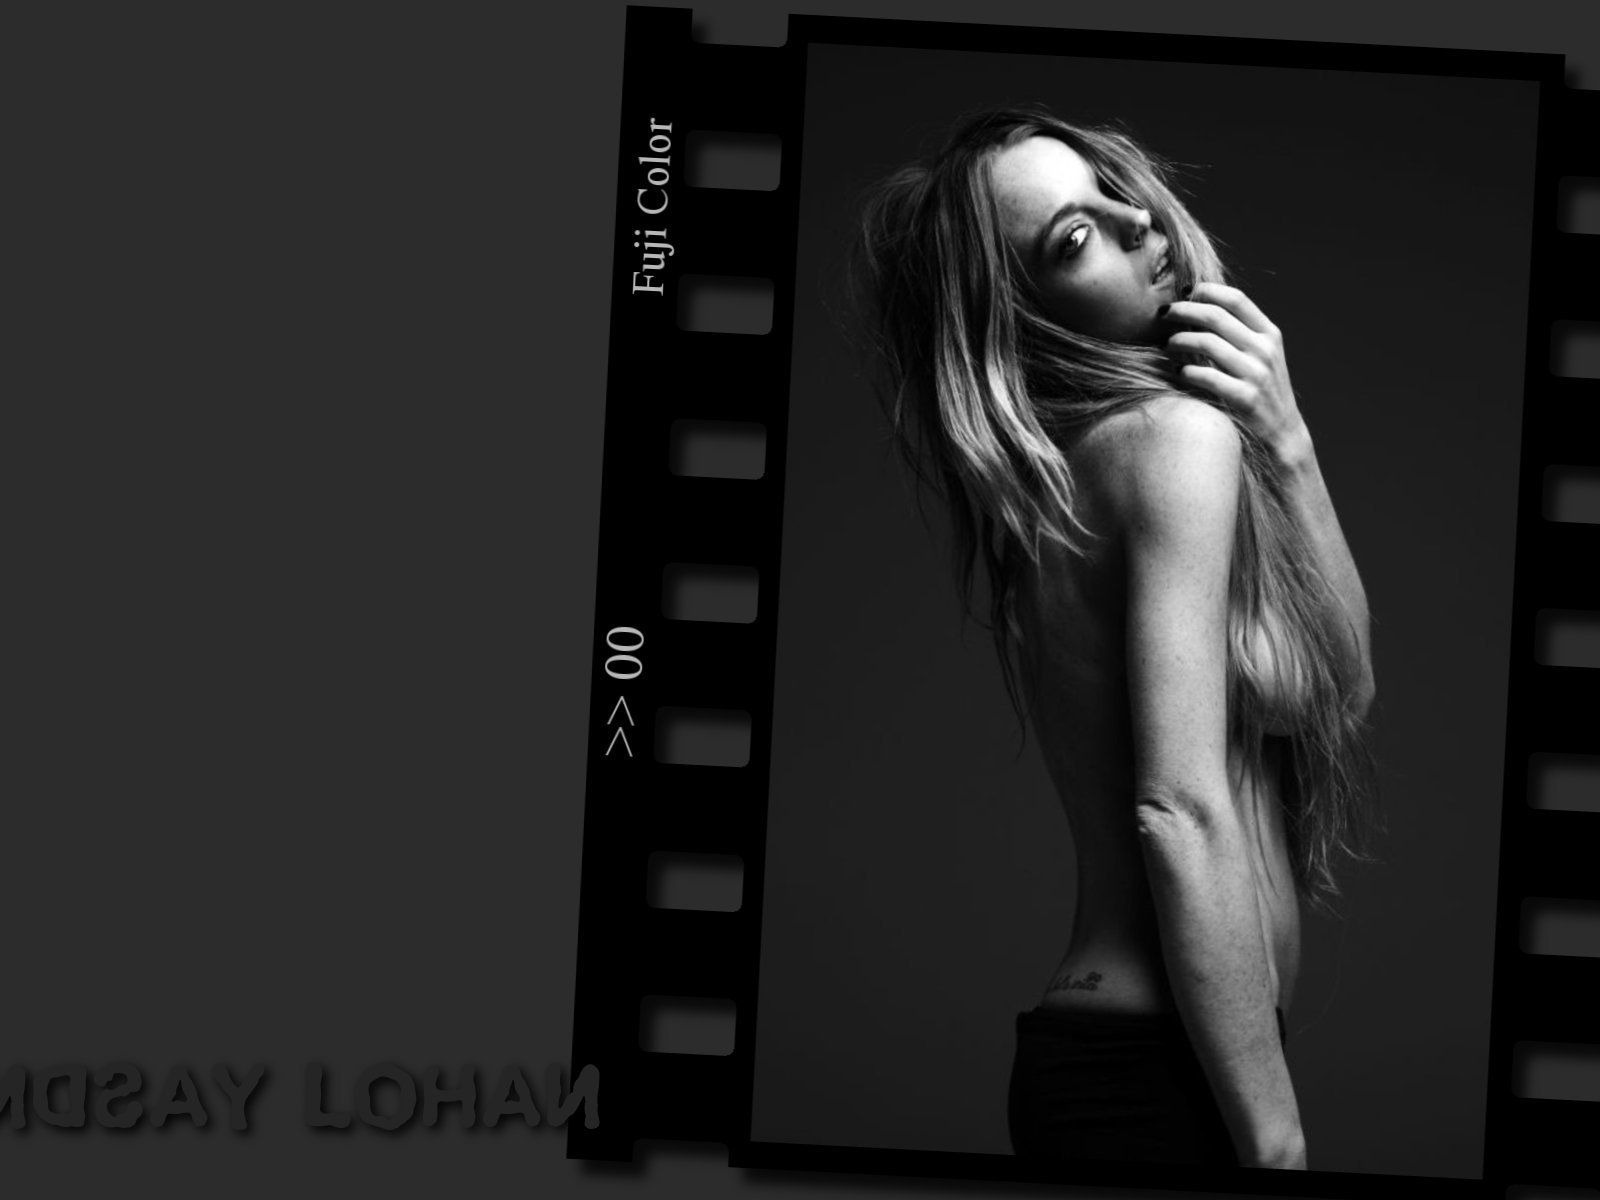 Lindsay Lohan 林赛·罗韩 美女壁纸25 - 1600x1200